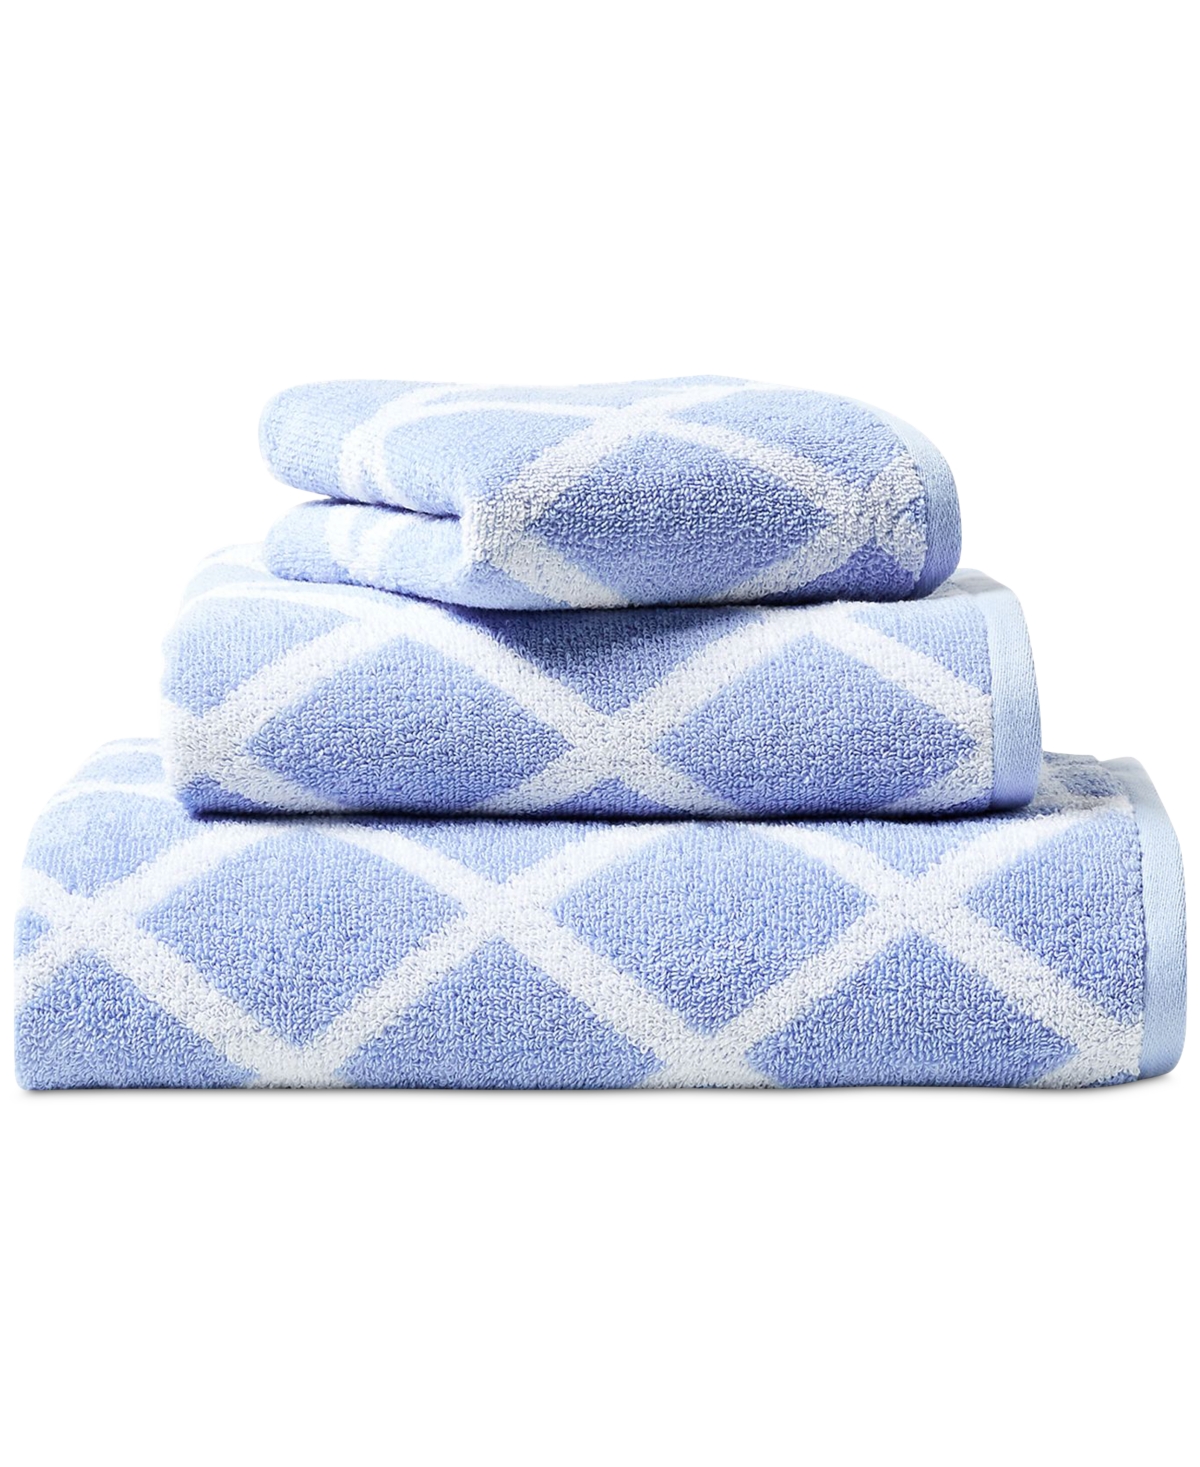 Lauren Ralph Lauren Sanders Diamond Cotton Bath Towel Bedding In Blue Cornflower